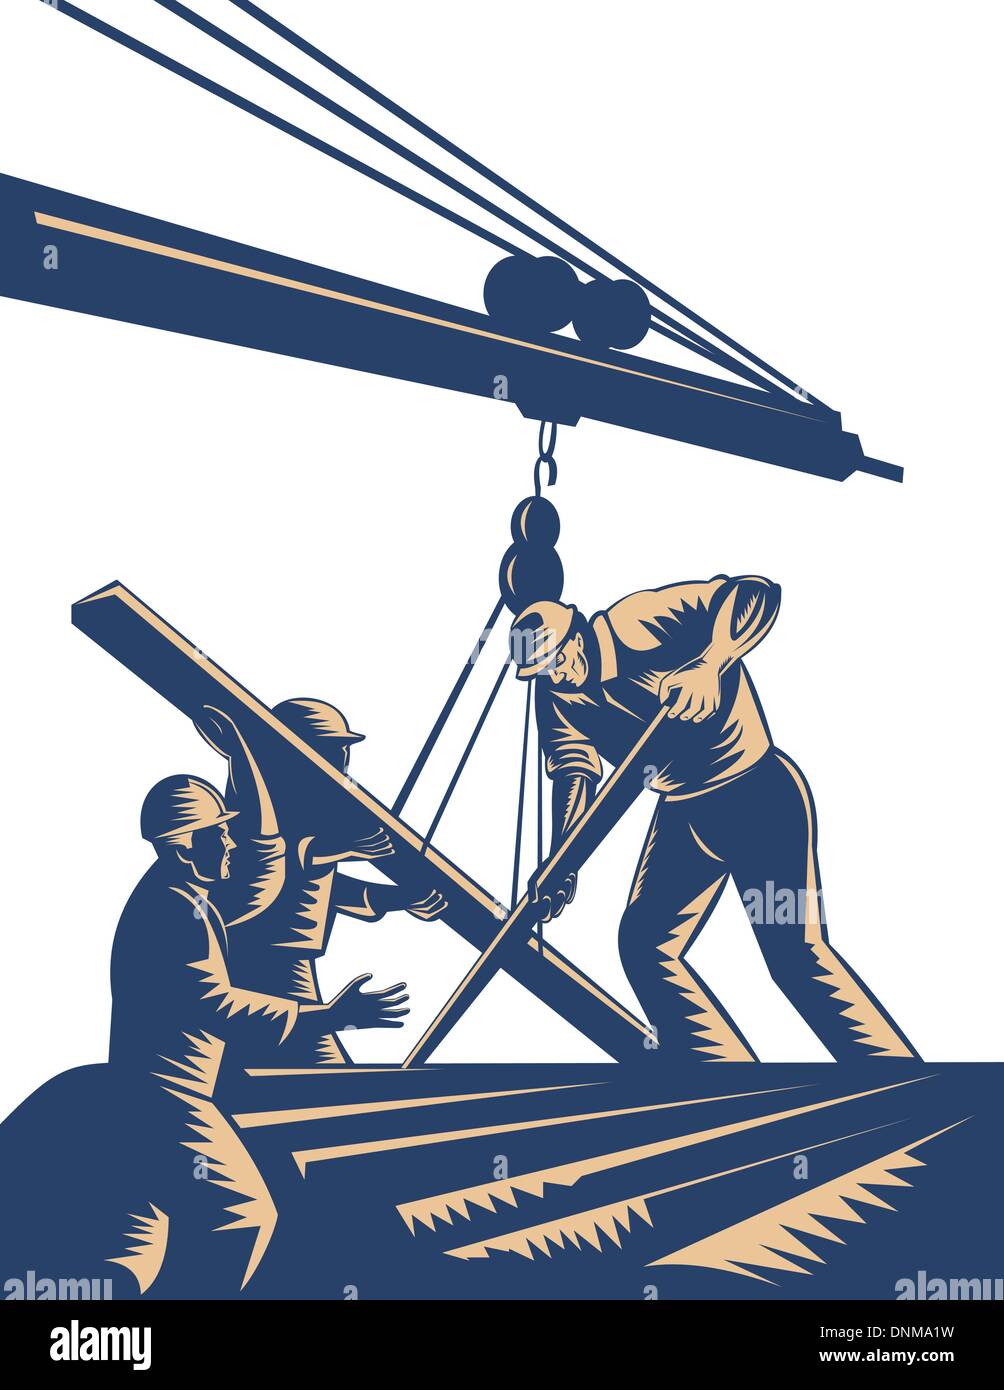 Illustrazione di un gruppo di lavoratori edili legname di sollevamento sul braccio fatto in xilografia stile. Illustrazione Vettoriale